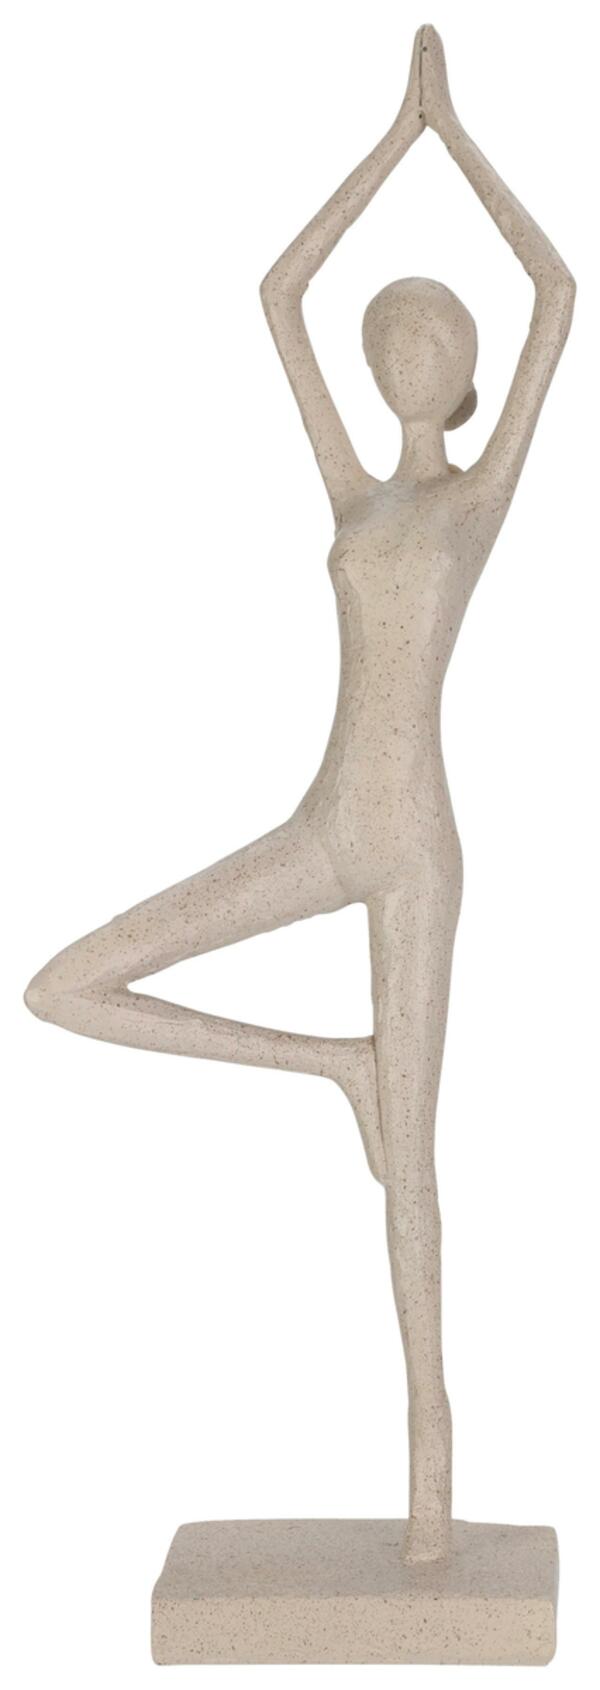 Bild 1 von Skulptur Yoga in Sandfarben, Sandfarben